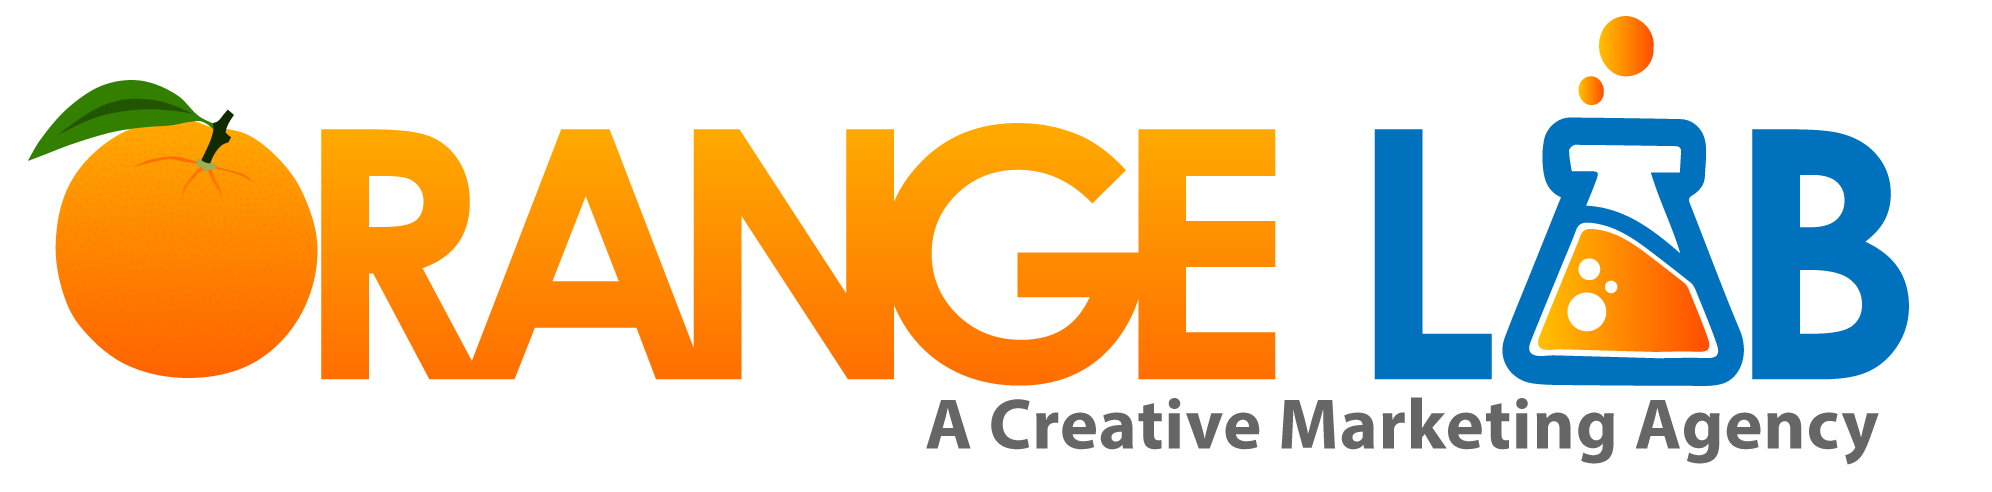 Orange Lab Media. A Creative Marketing agency.